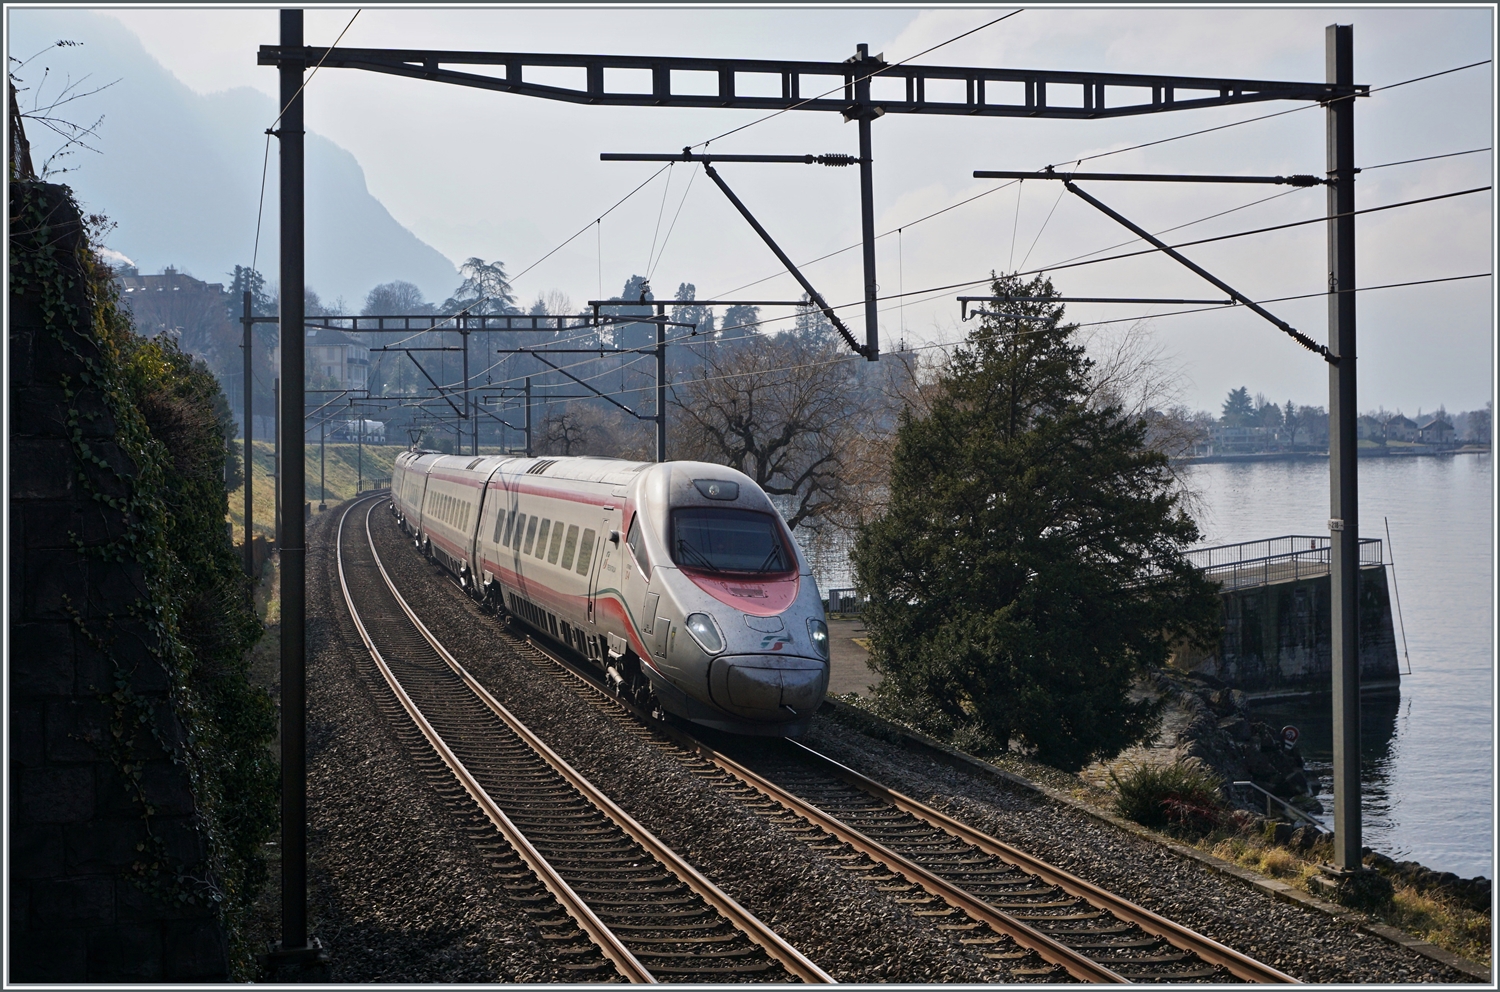 Ein Gegenlichtbild des FS Trenitalia ETR 610 004 auf der Fahrt von Milano nach Genève kurz vor dem Château de Chillon. 

8. Februar 2023